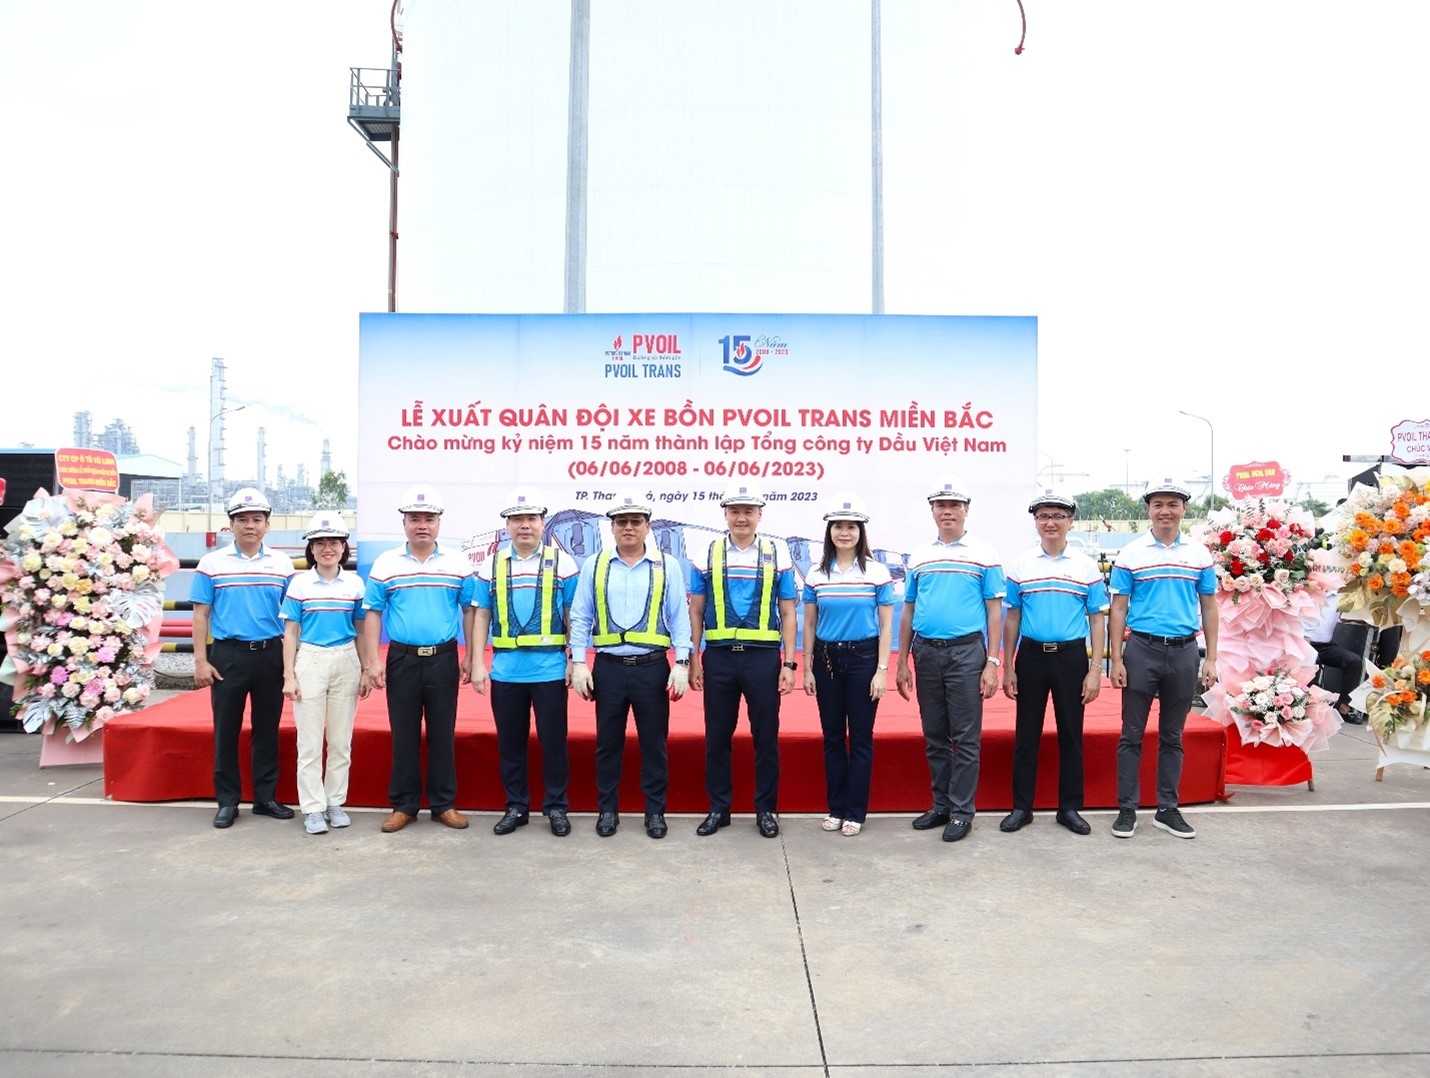 Đại diện Ban lãnh đạo Tổng kho xăng dầu PVOIL Nghi Sơn, PVOIL Thanh Hoá và các thành viên Ban Giám đốc và Lãnh đạo các phòng chức năng PVOIL Trans chụp ảnh lưu niệm.